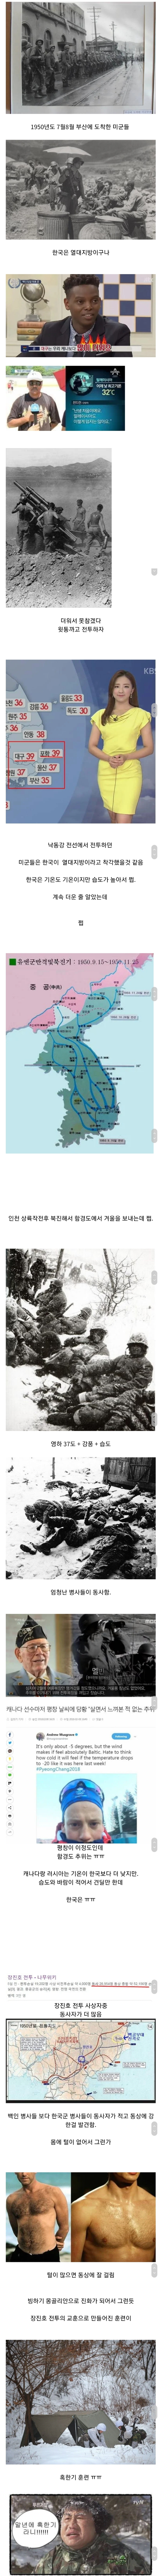 한국전쟁 때 미군들을 당황시킨 것.jpg